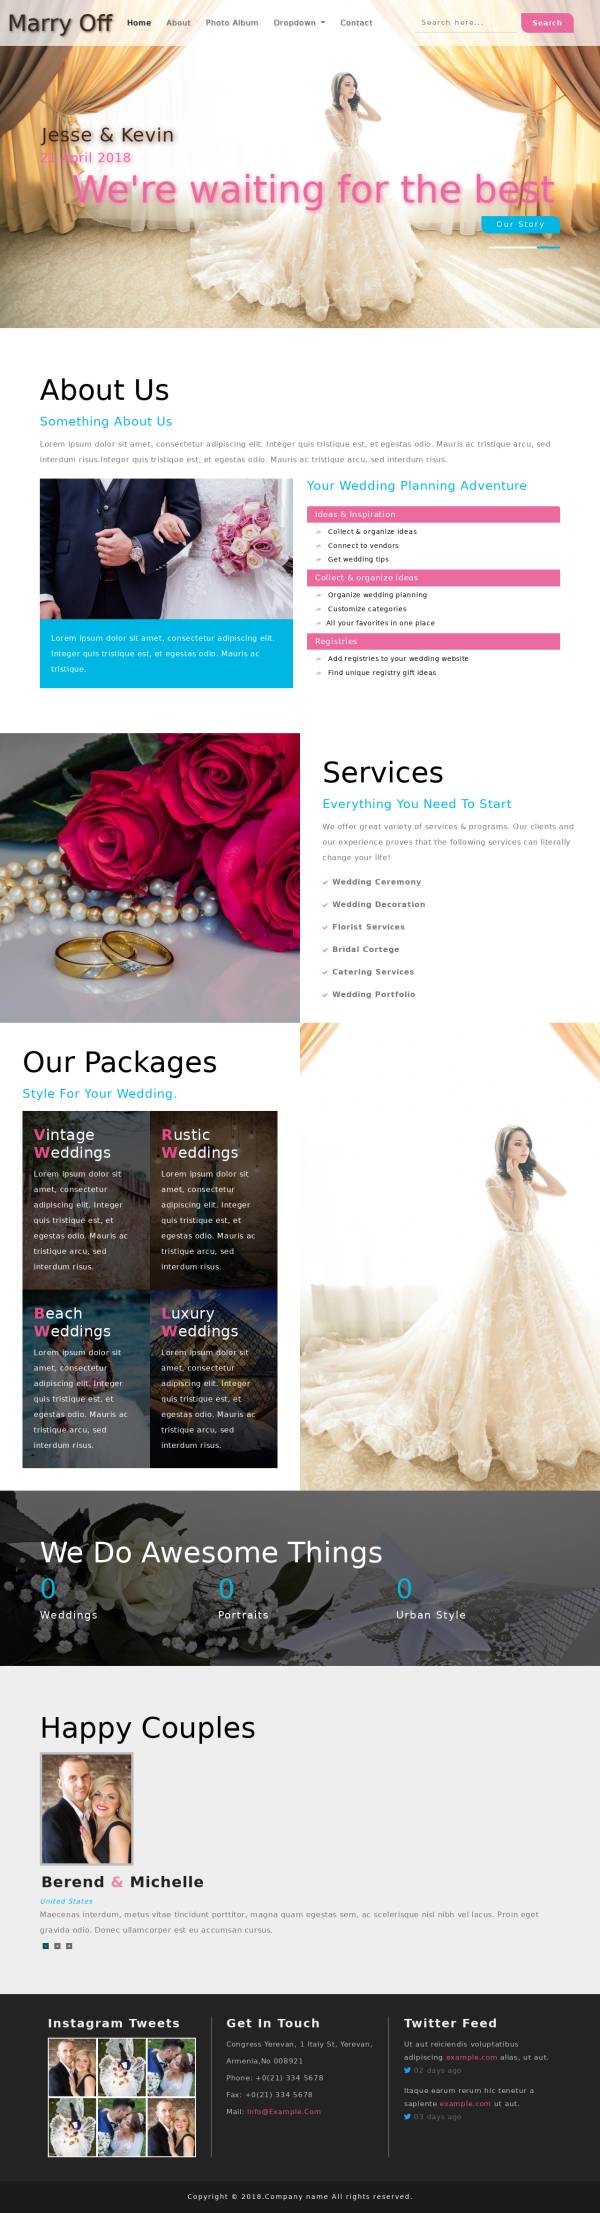 宽屏的婚纱摄影图片展示网站模板